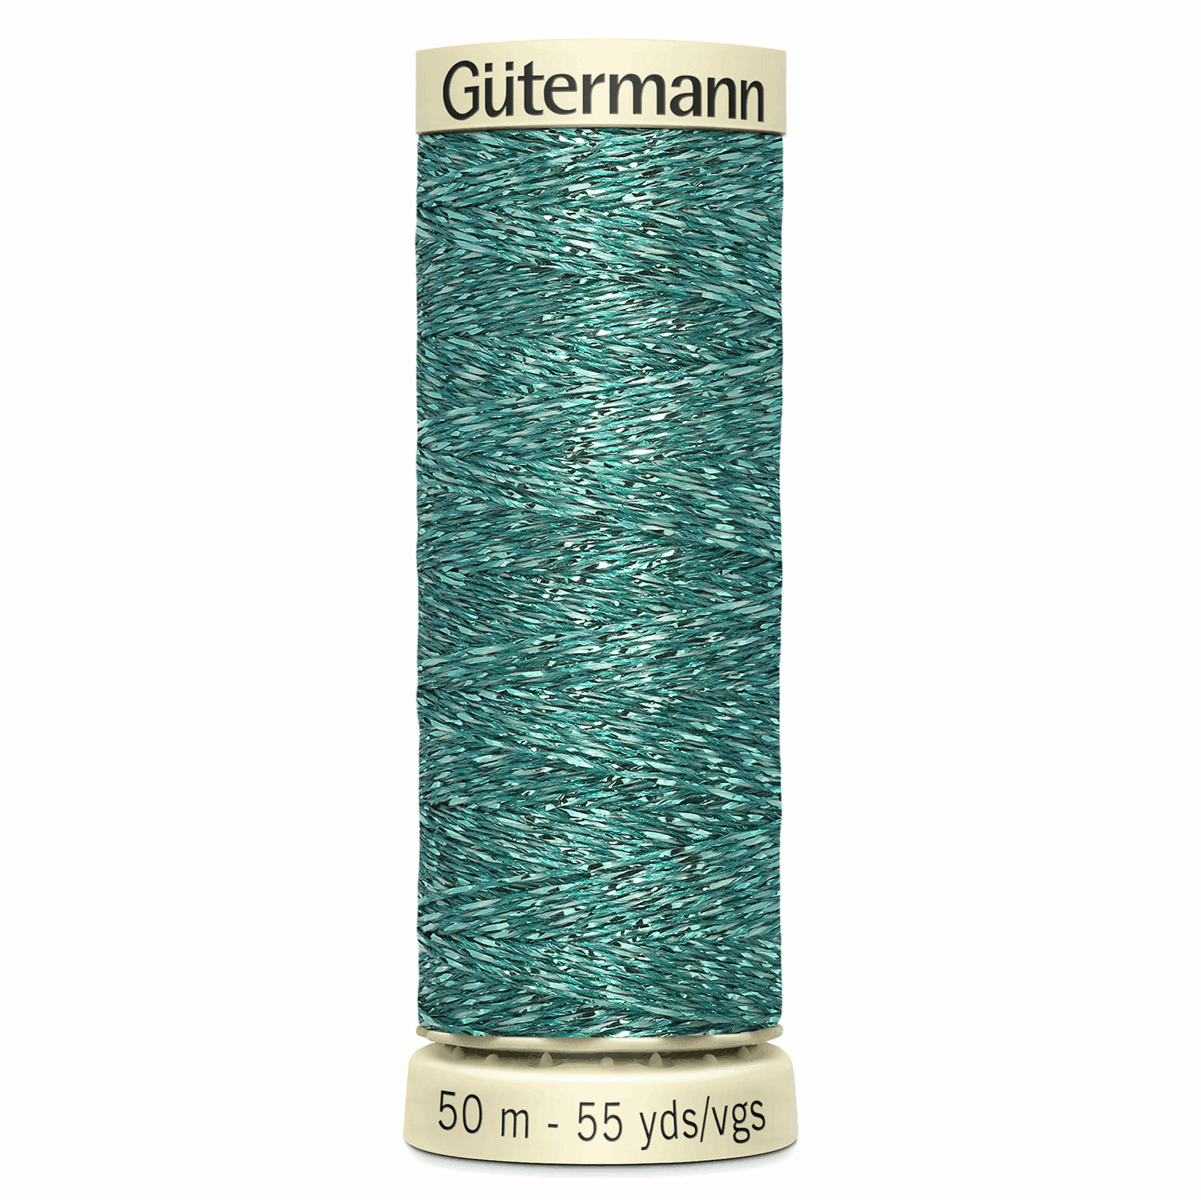 Gutermann Green Metallic Effect Thread - 50m